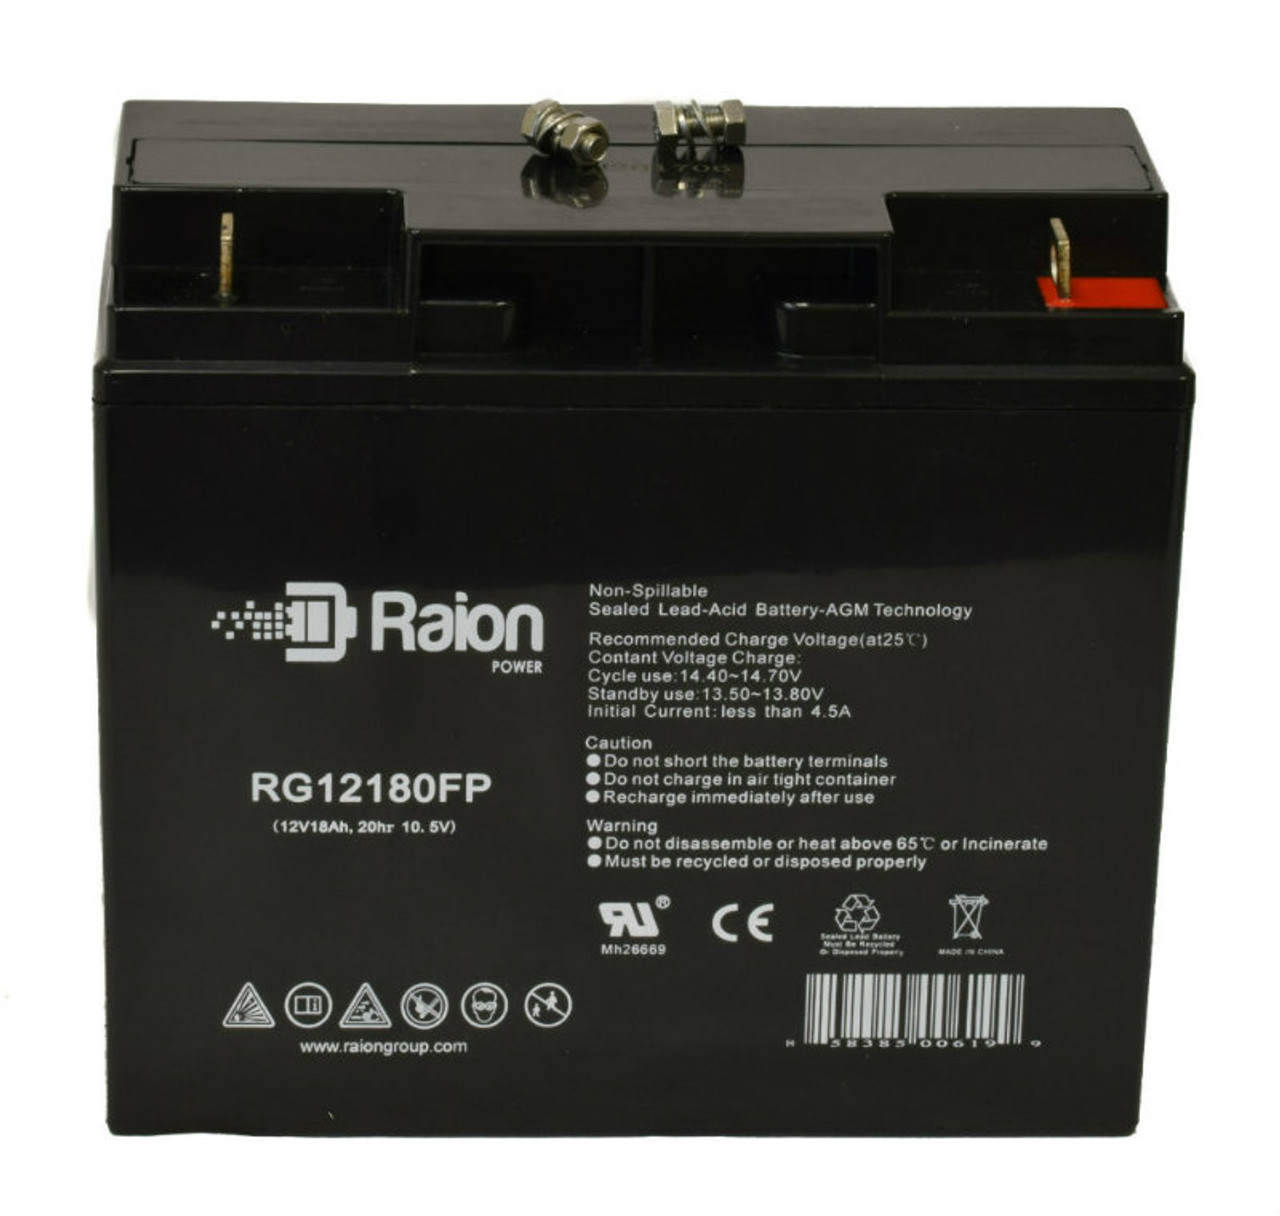 Raion Power RG12180FP 12V 18Ah Lead Acid Battery for Expocell P212/170